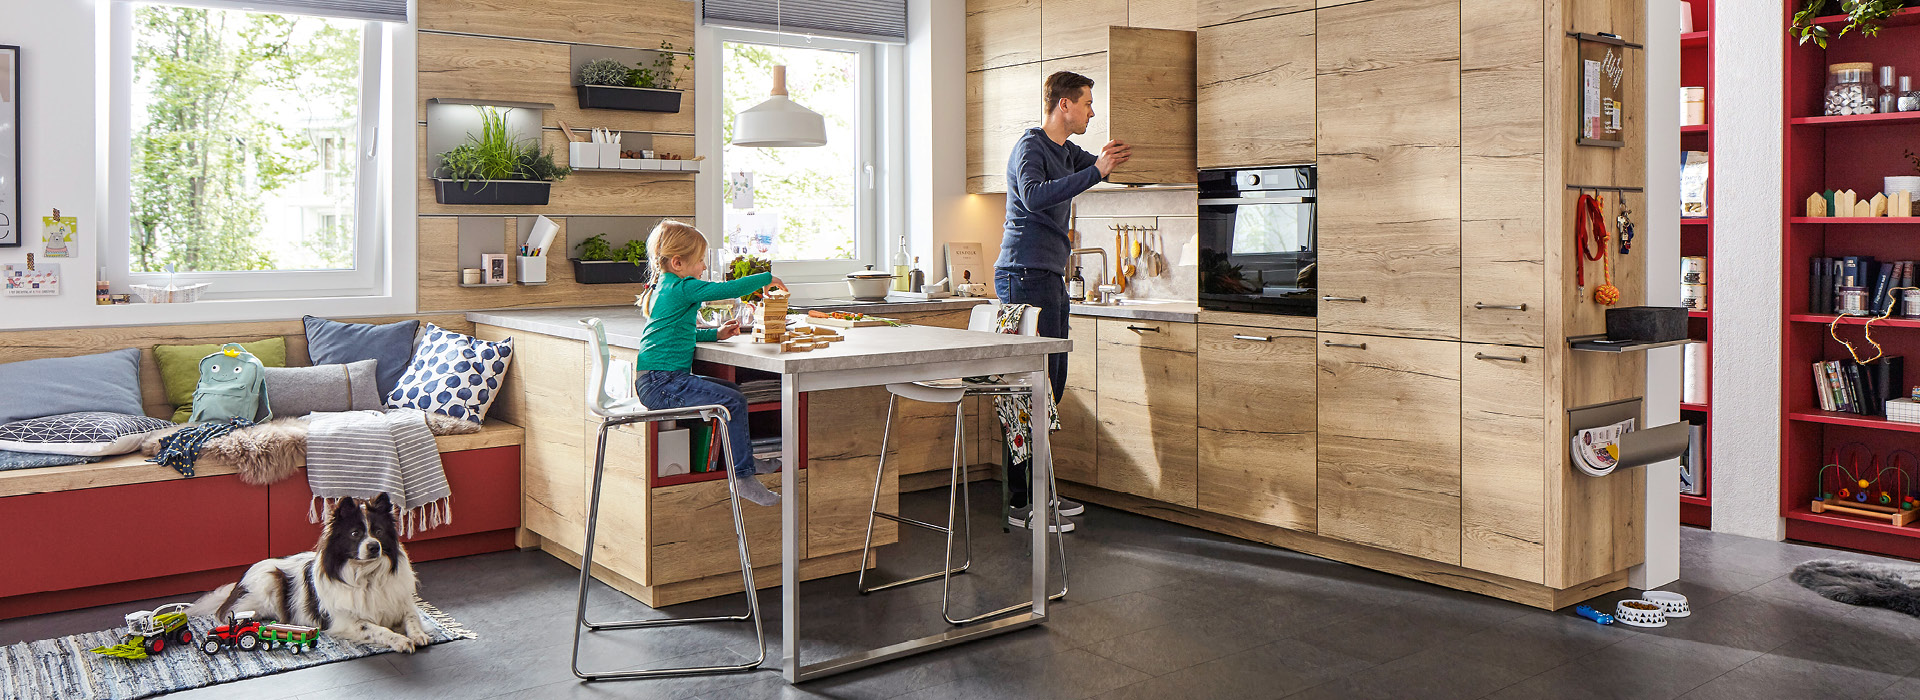 Küche mit Holzfrontetn, Vater, Sohn und Hund